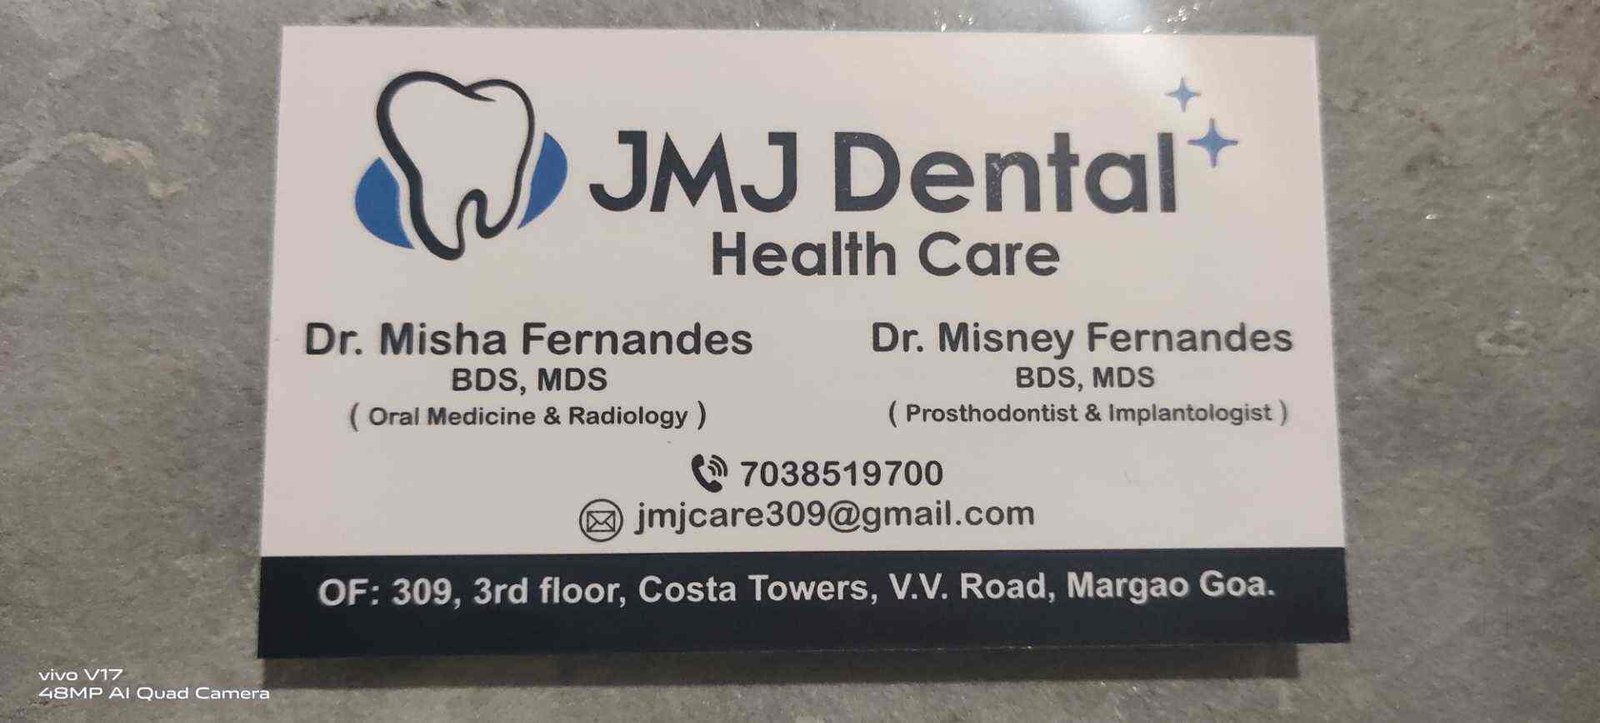 JMJ Dental